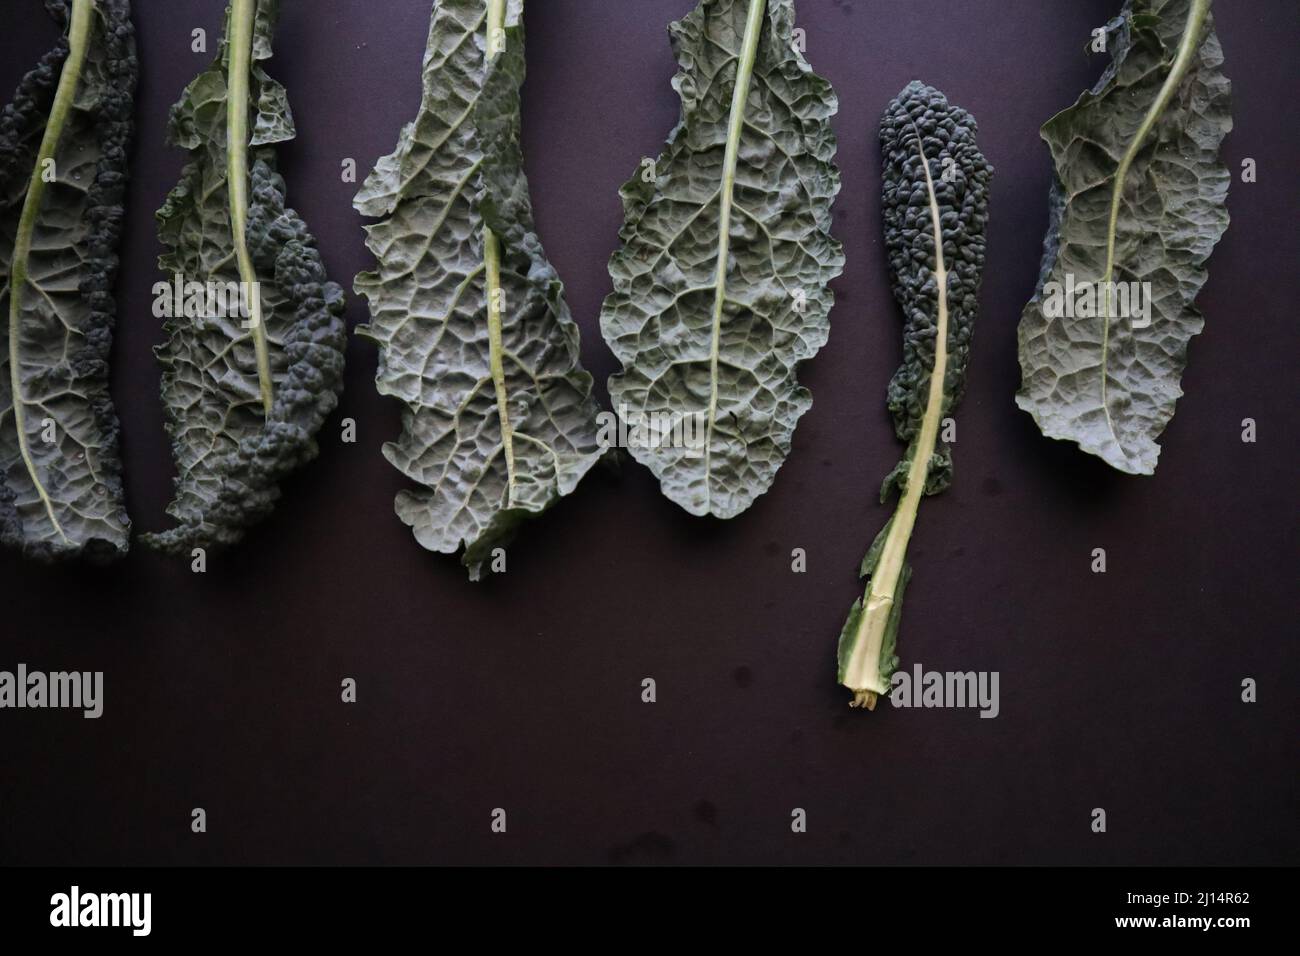 Kale on Black Background Stock Photo